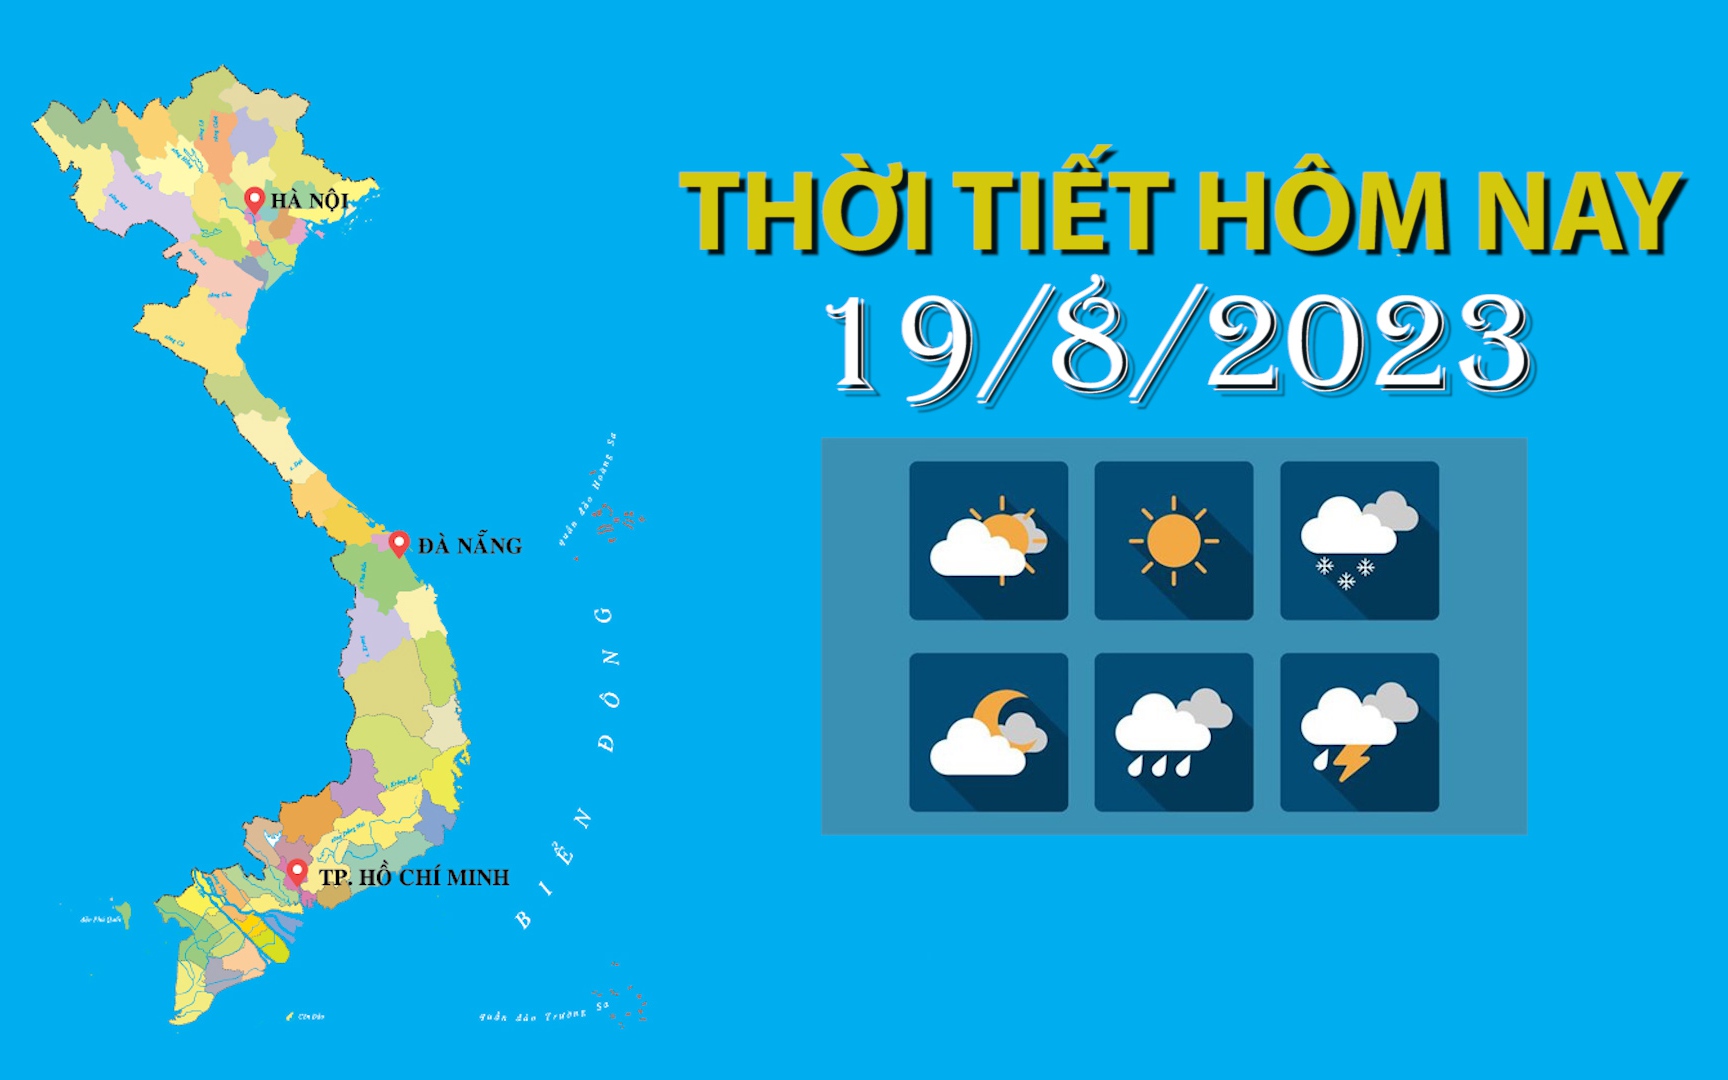 Thời tiết hôm nay 19/8/2023: Bắc Bộ, Tây Nguyên và Nam Bộ mưa vừa, mưa to, có nơi mưa rất to